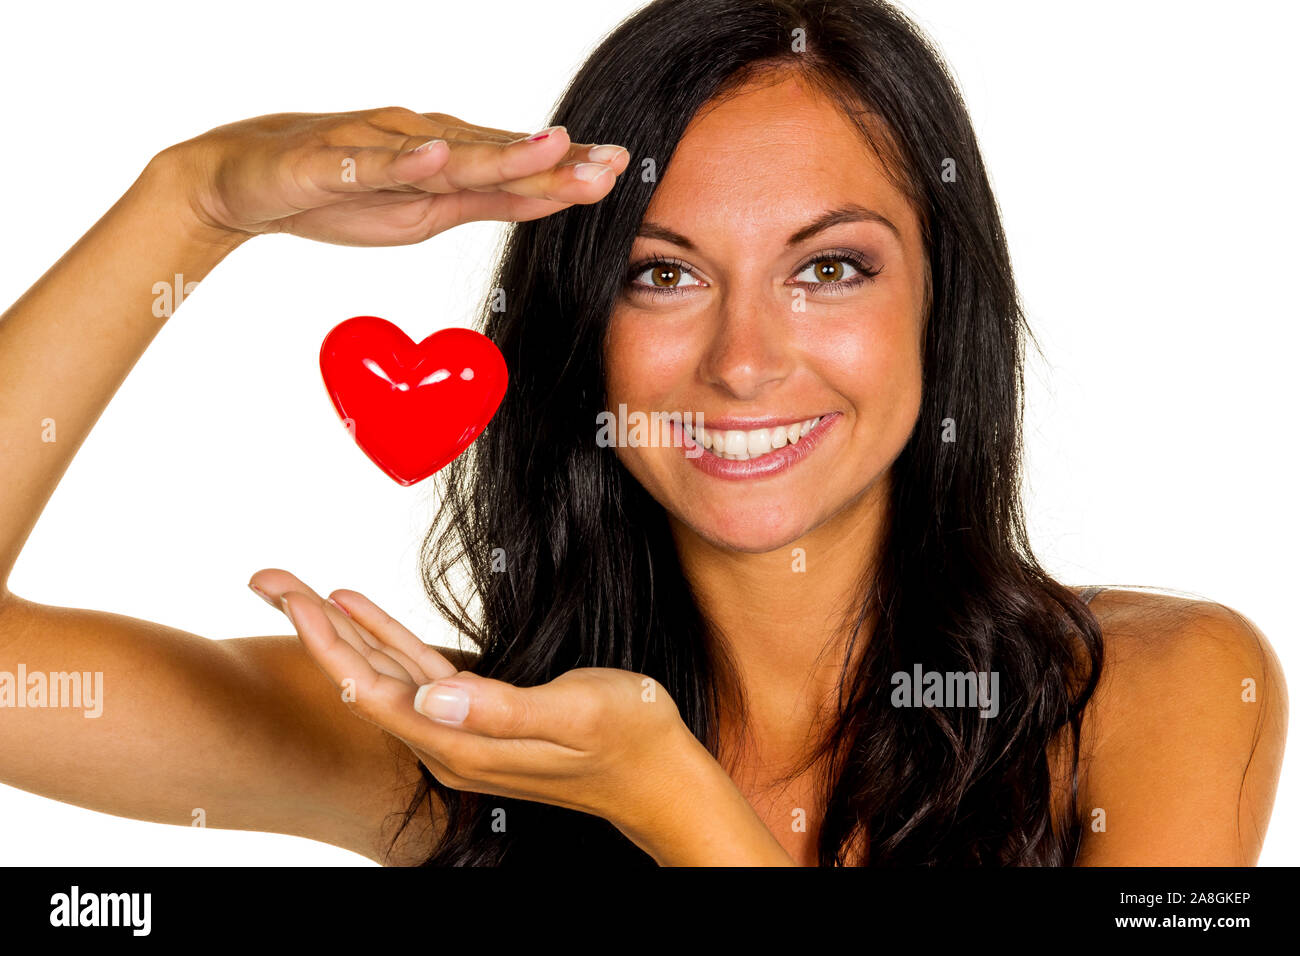 Eine verliebte junge Frau hält ein Herz in der Hand, 20, 25, Jahre, MR: Yes Stock Photo